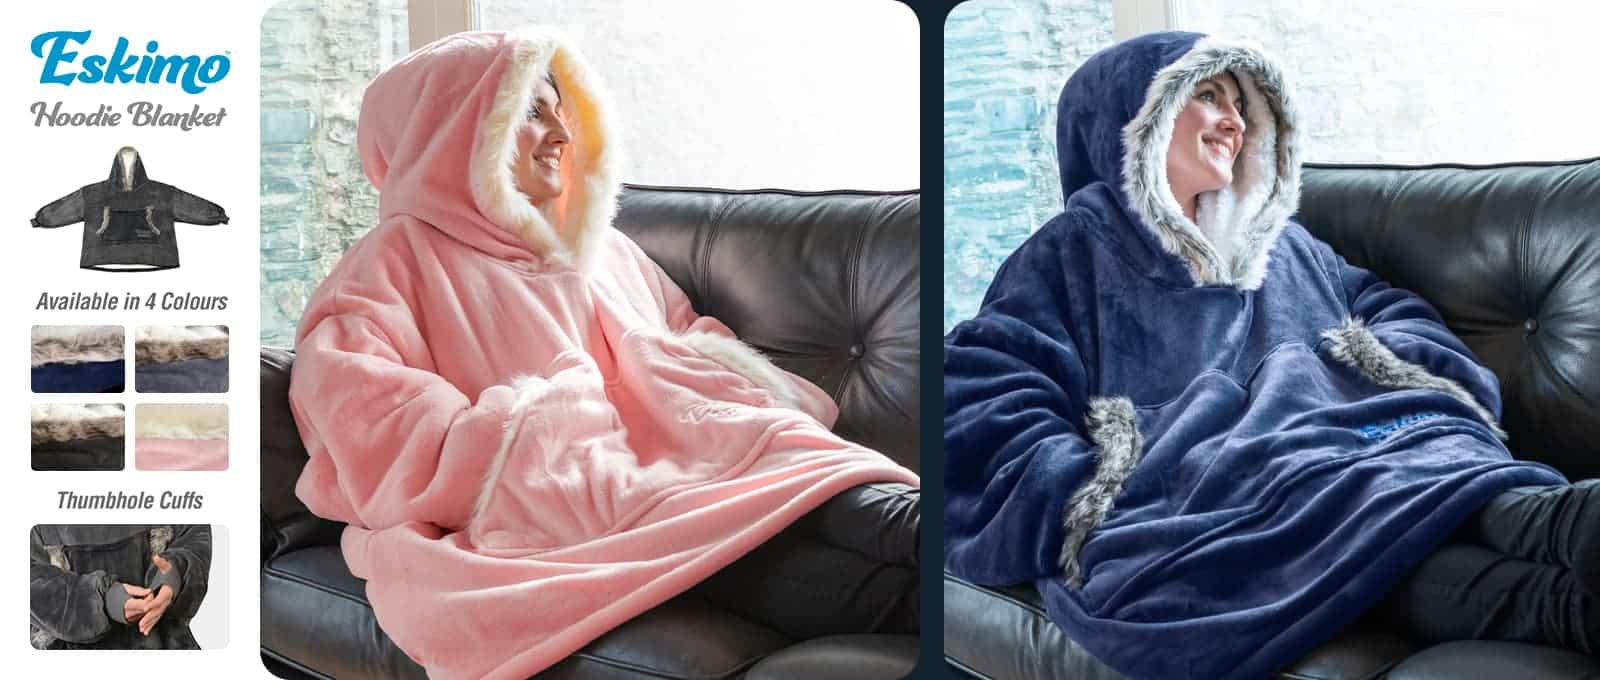 Nightbex® Original Blanket Hoodie - Oversized Super Soft Hoodie